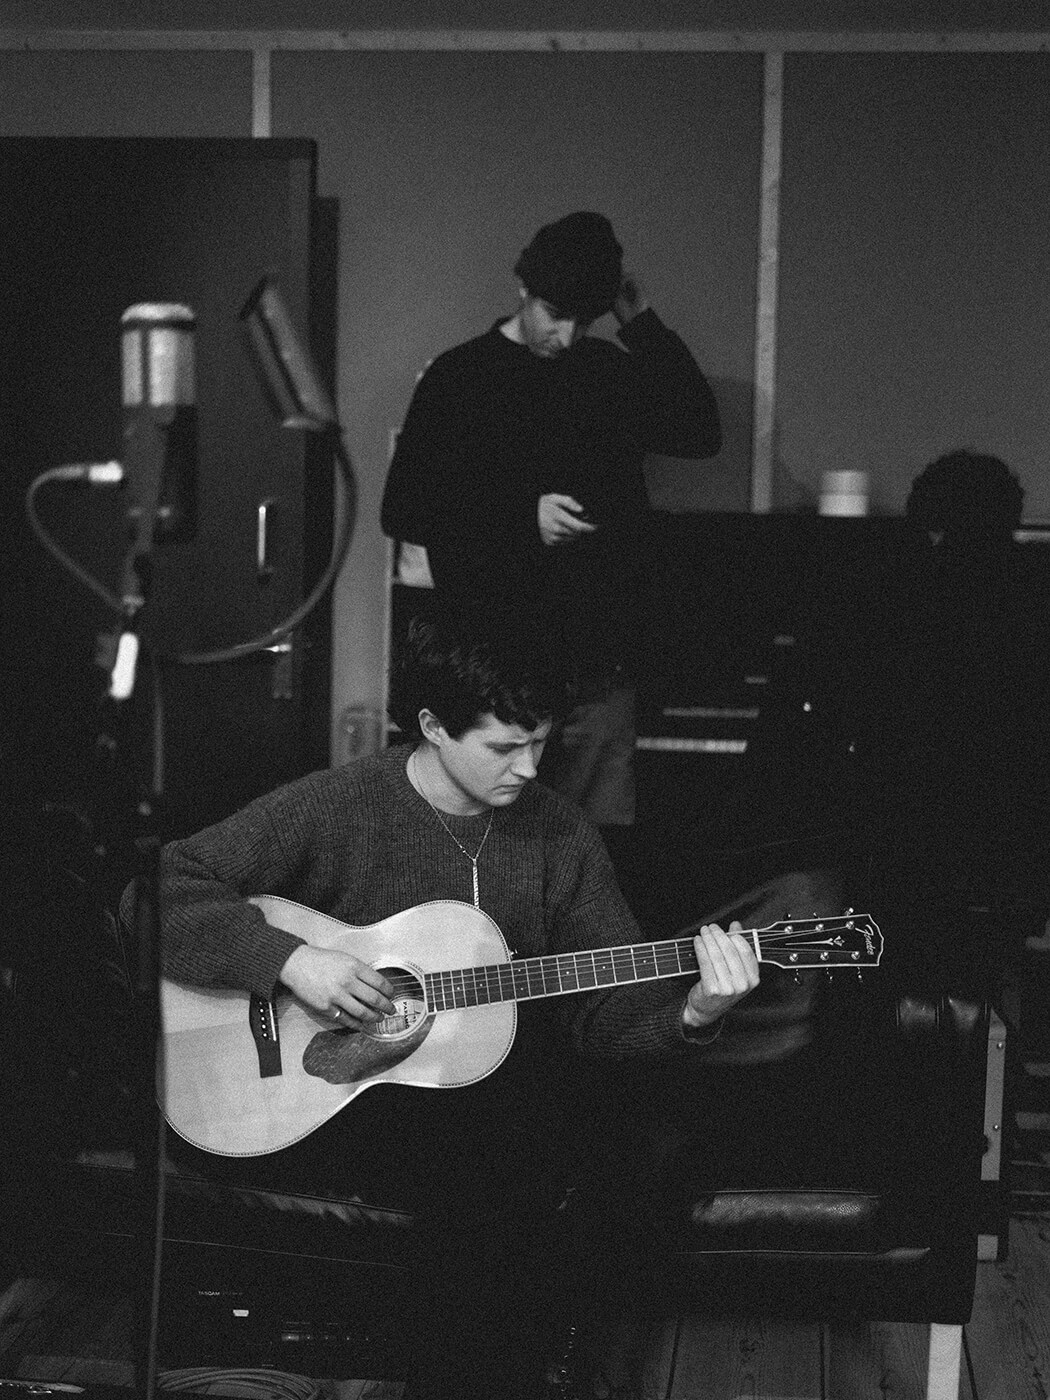 Porij in the studio, photo by Zak Watson